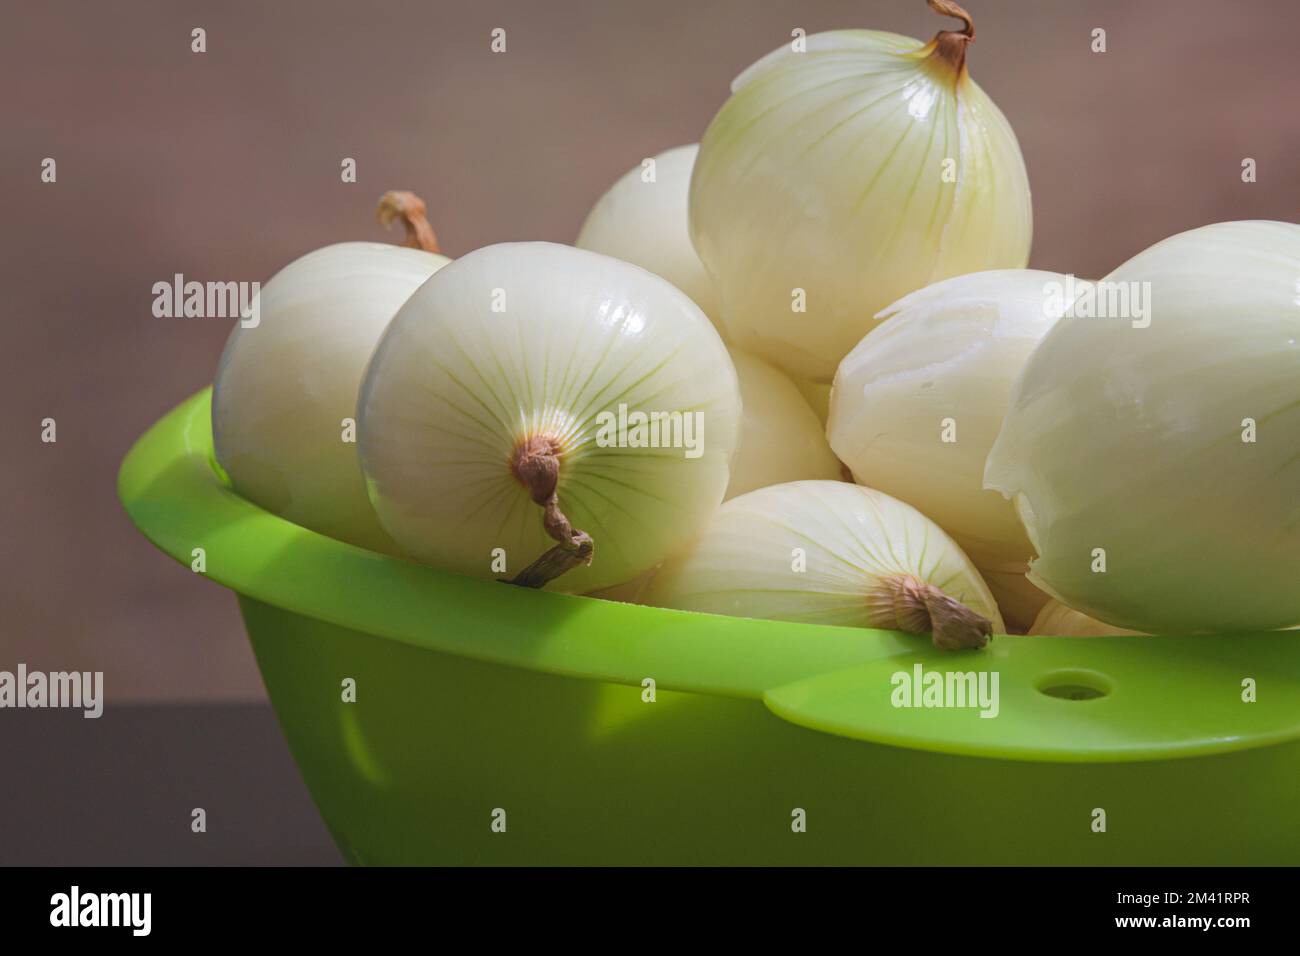 Geschälte Zwiebeln in einem grünen Kunststoffsieb. Speicherplatz kopieren. Brauner Hintergrund Stockfoto